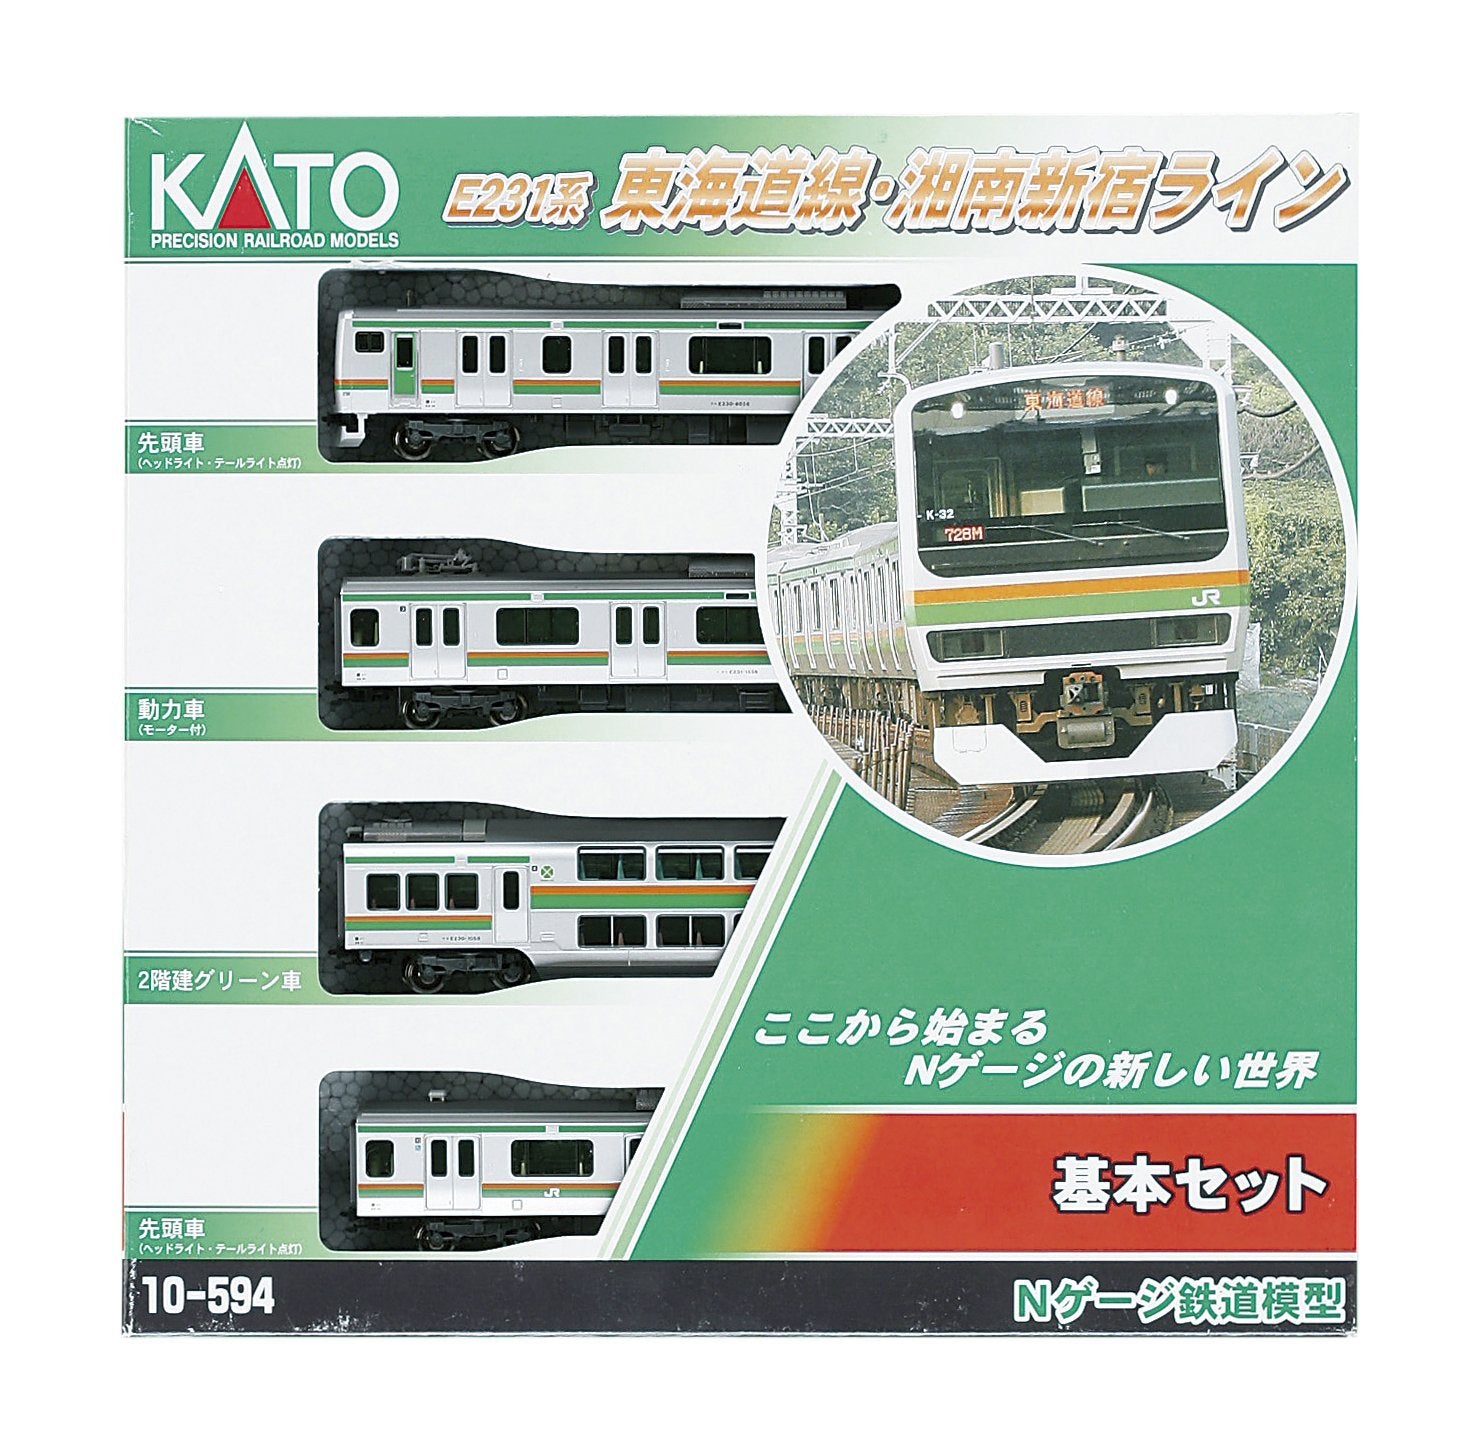 10-594 Series E231 Tokaido Shonan-Shinjuku Line Basic 4-Car Set